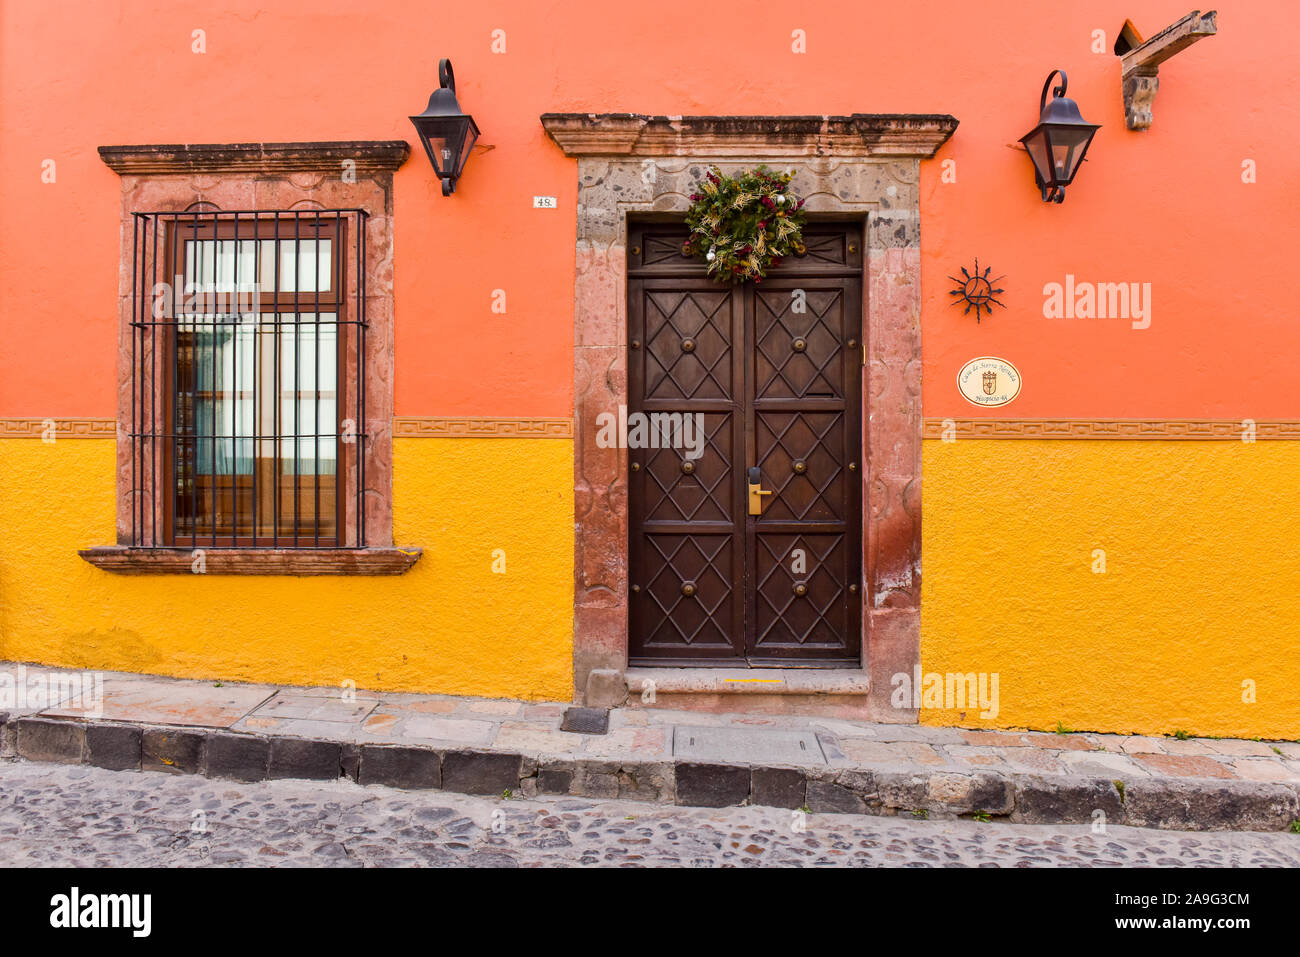 Casas coloniales mexicanas fotografías e imágenes de alta resolución - Alamy